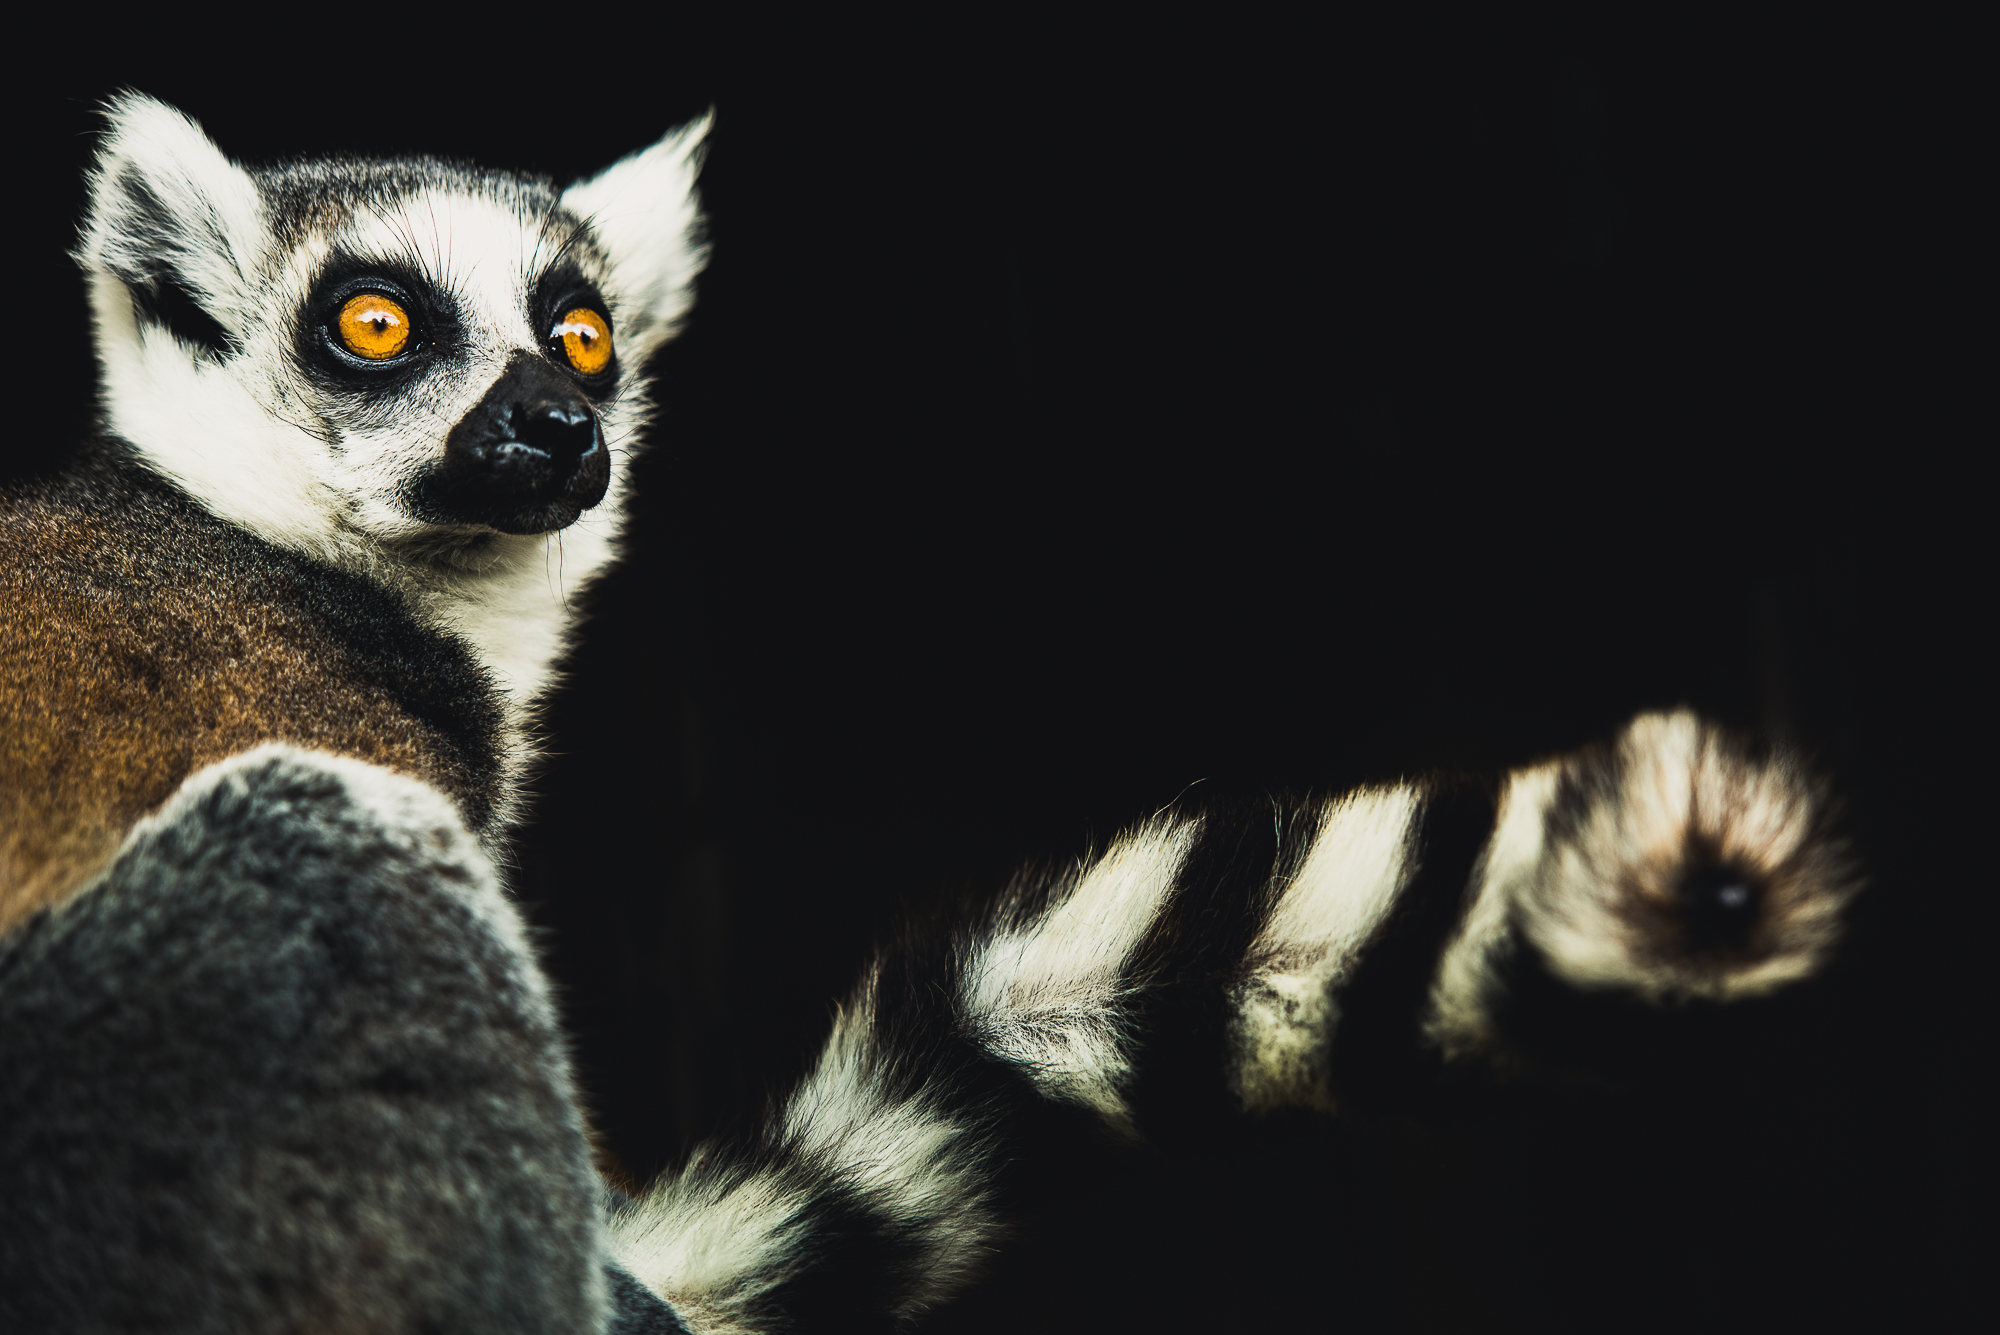 Ring tailed lemur portrait